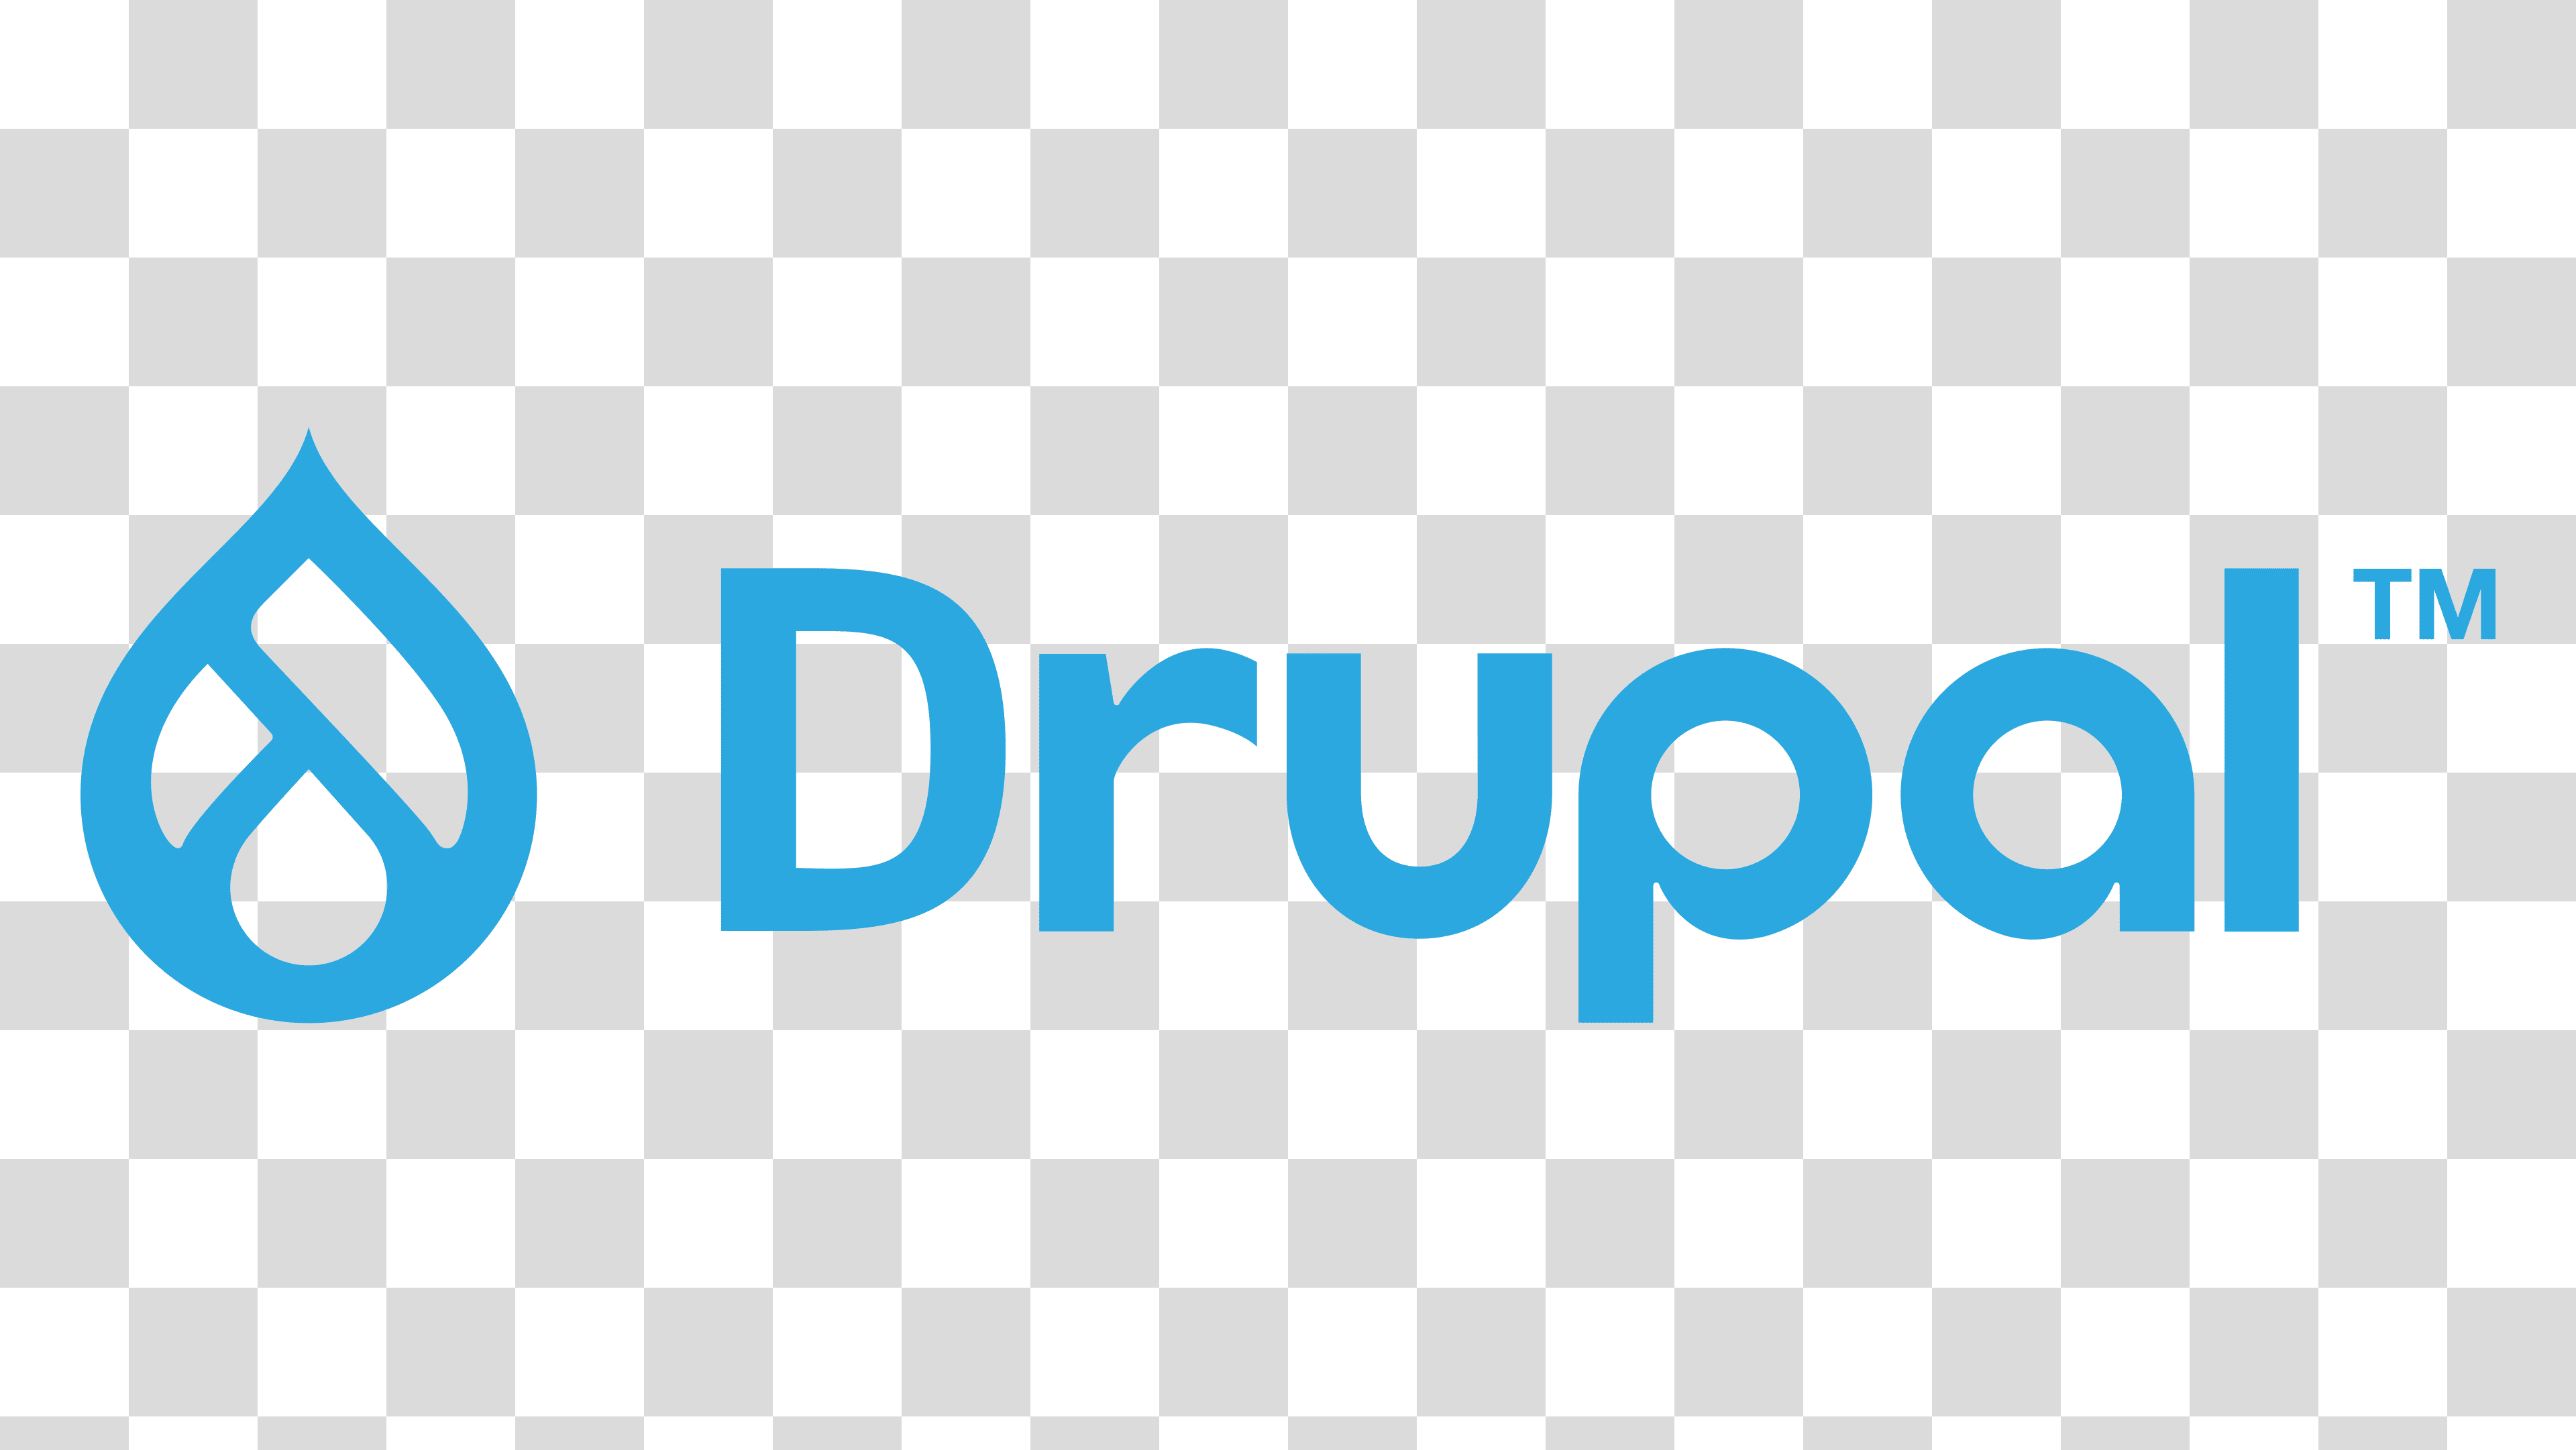 Drupal Logo PNG Transparent Image